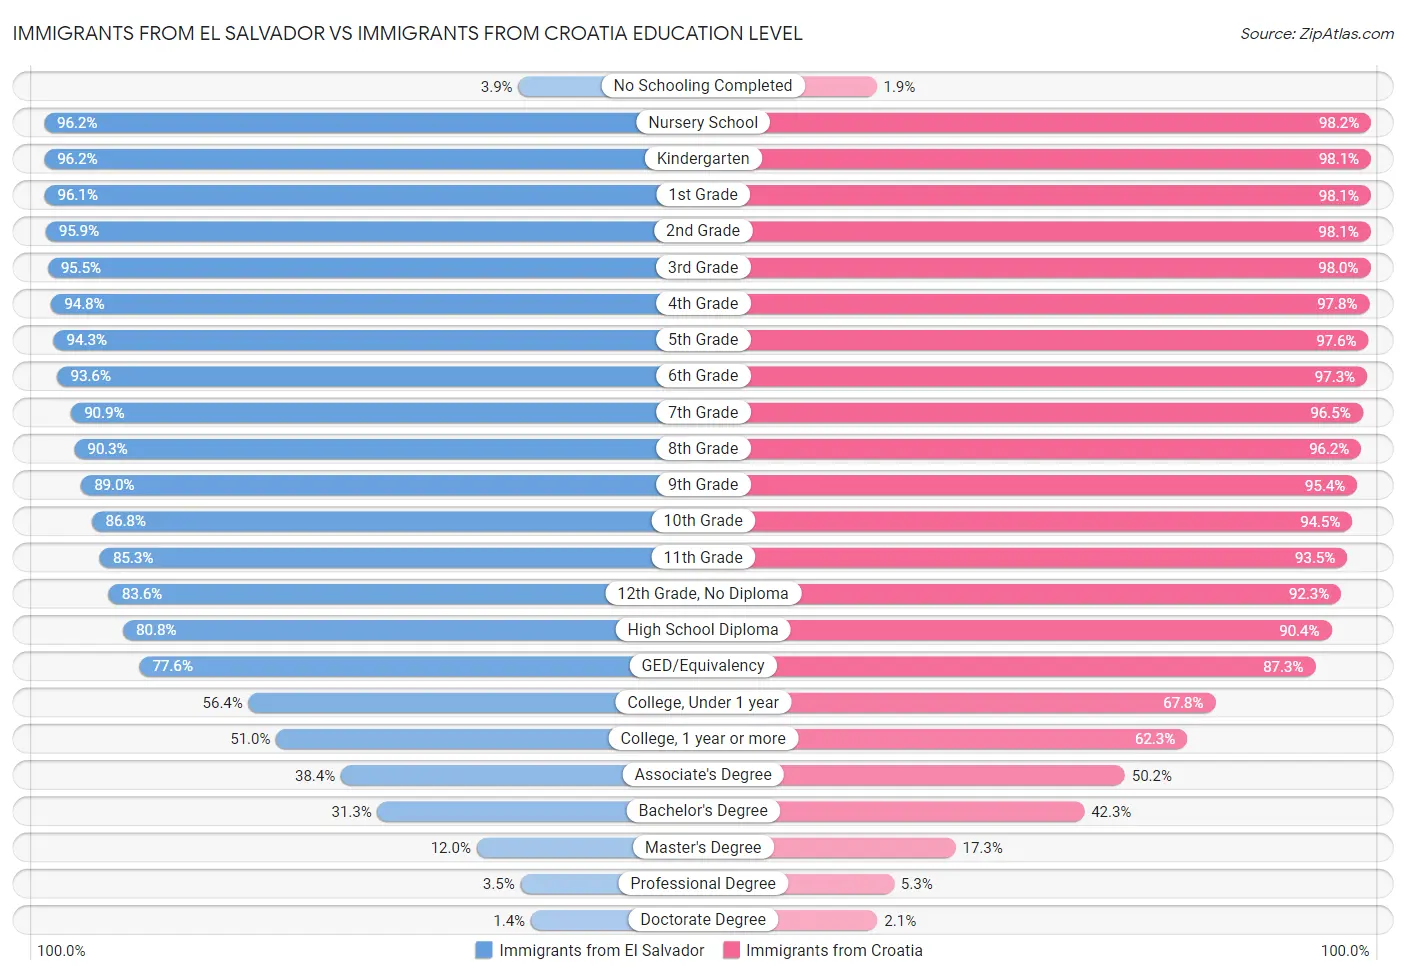 Immigrants from El Salvador vs Immigrants from Croatia Education Level